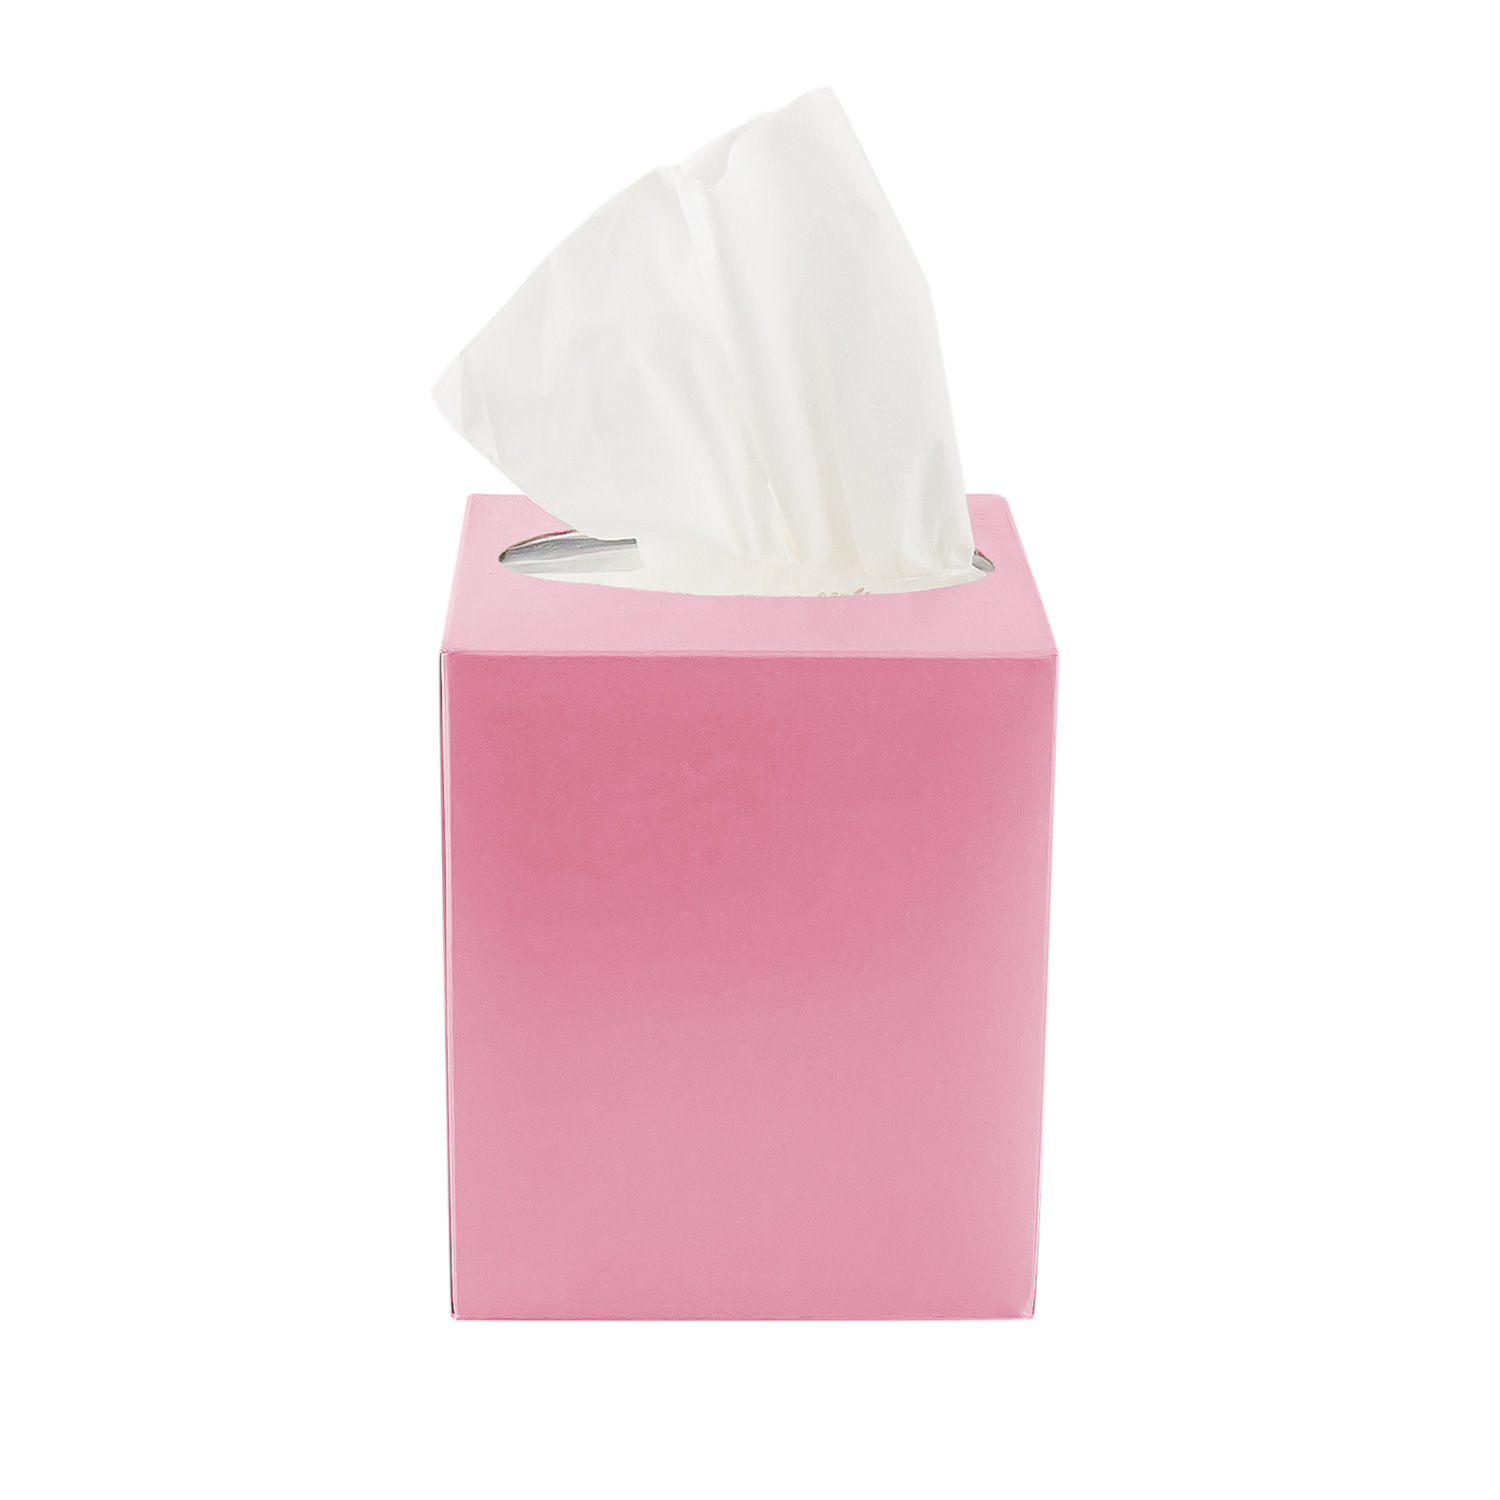 Facial Tissue Paper Boutique Box Pink Colour, Sqaure Shape, 1P x 36 PC